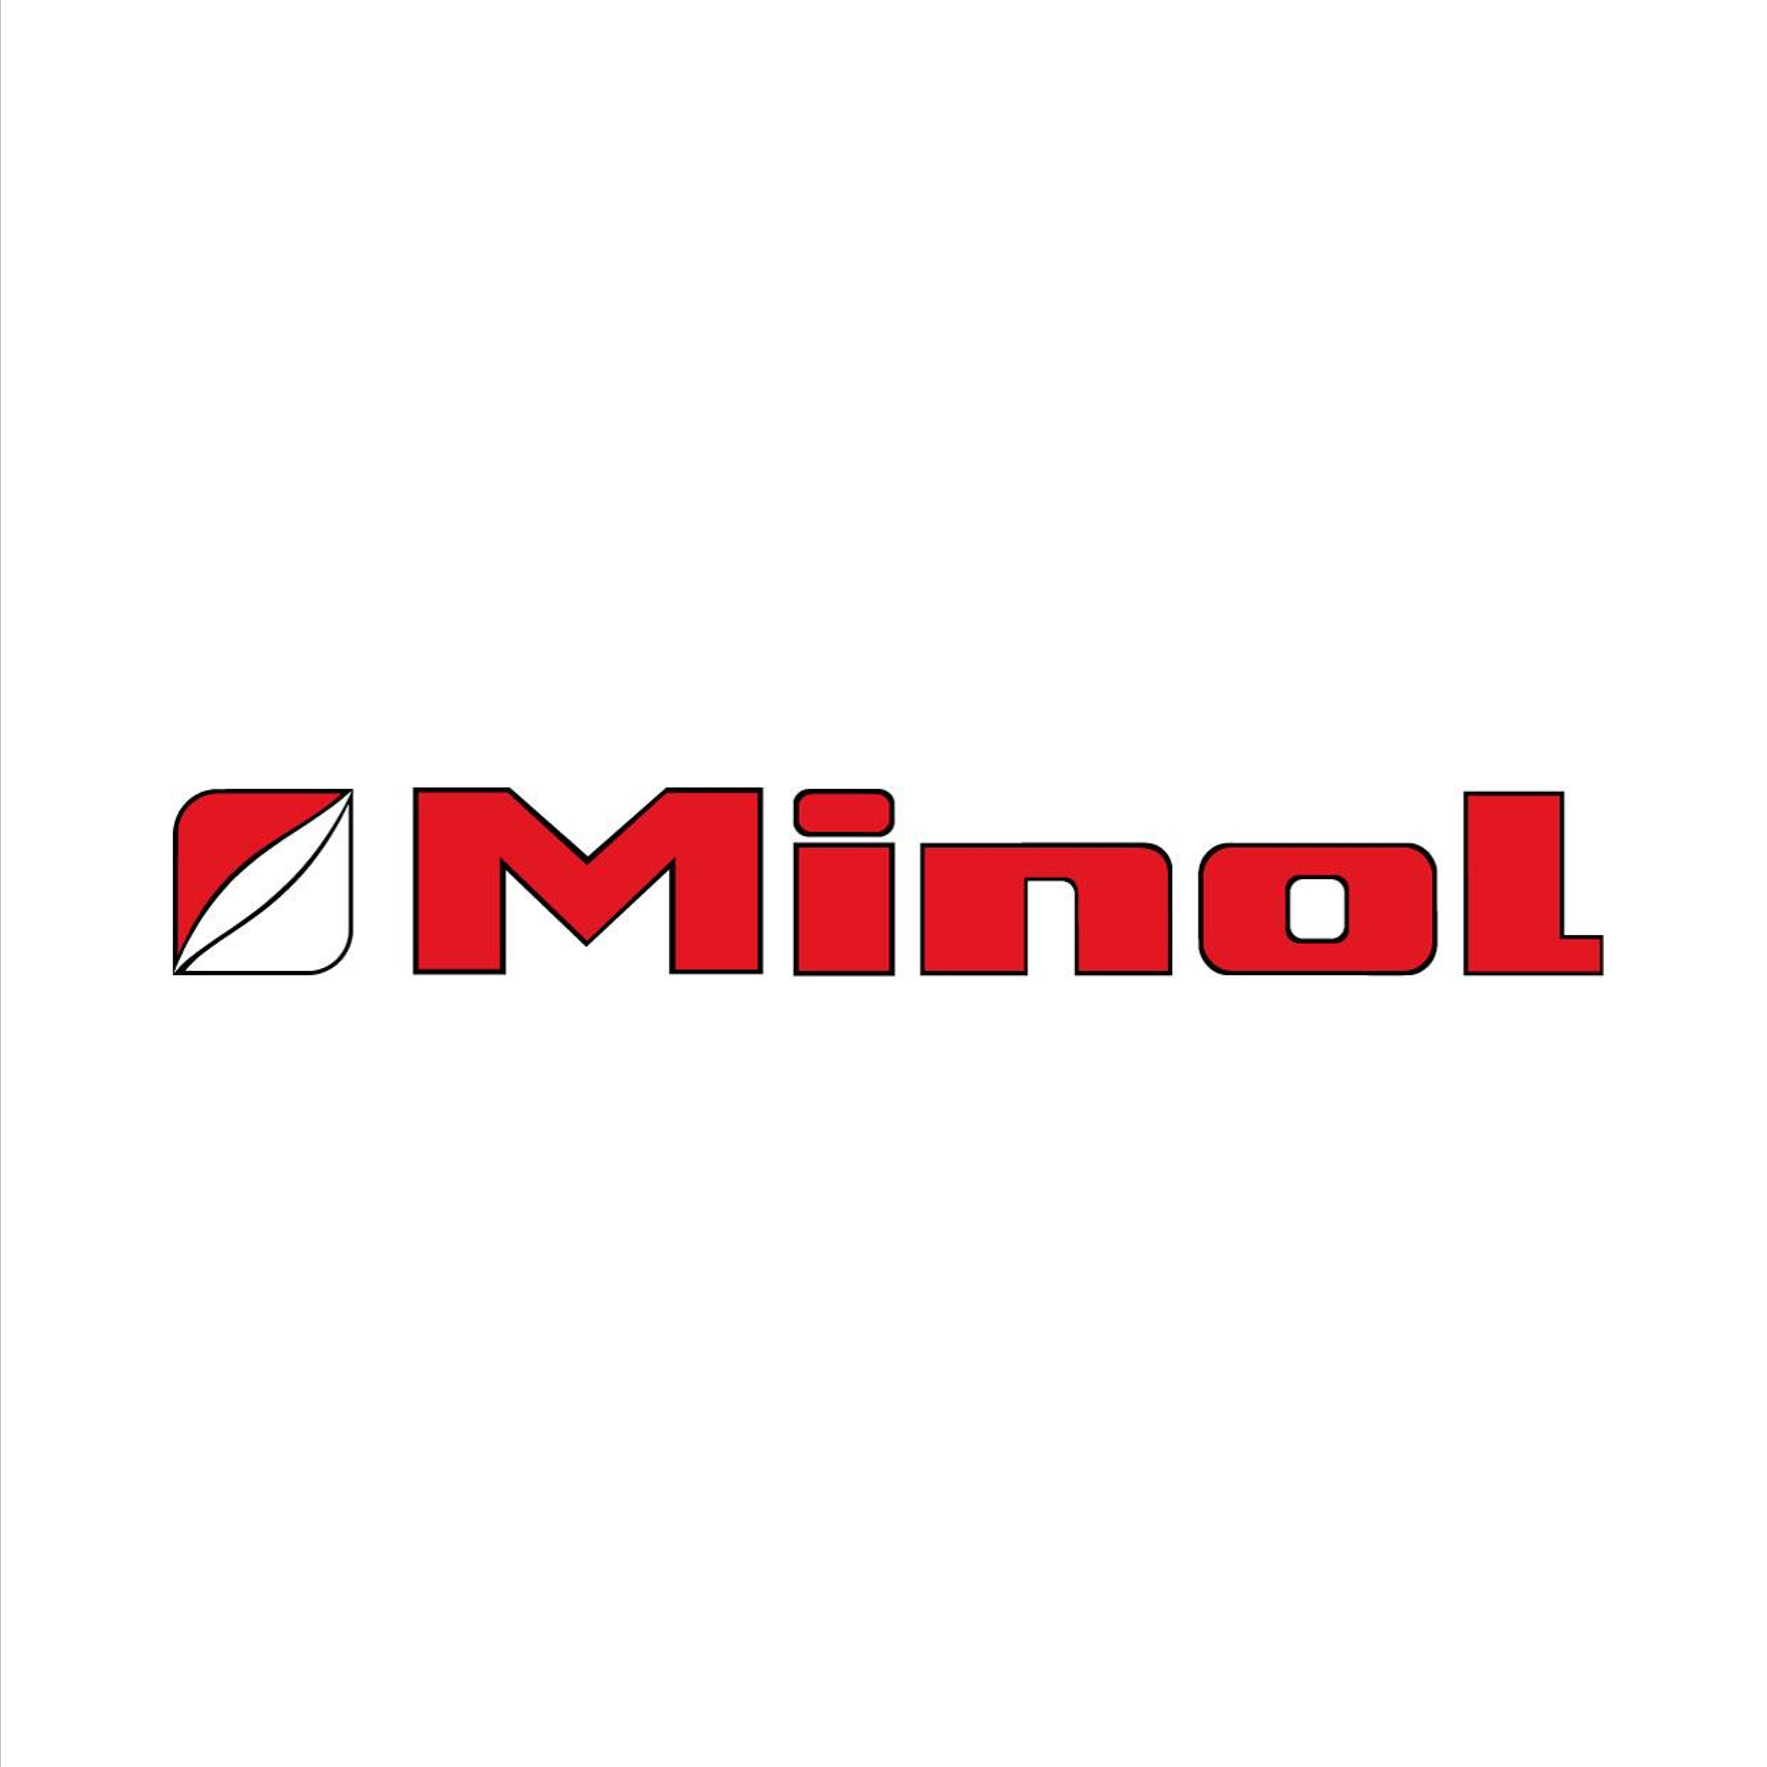 Minol Logo